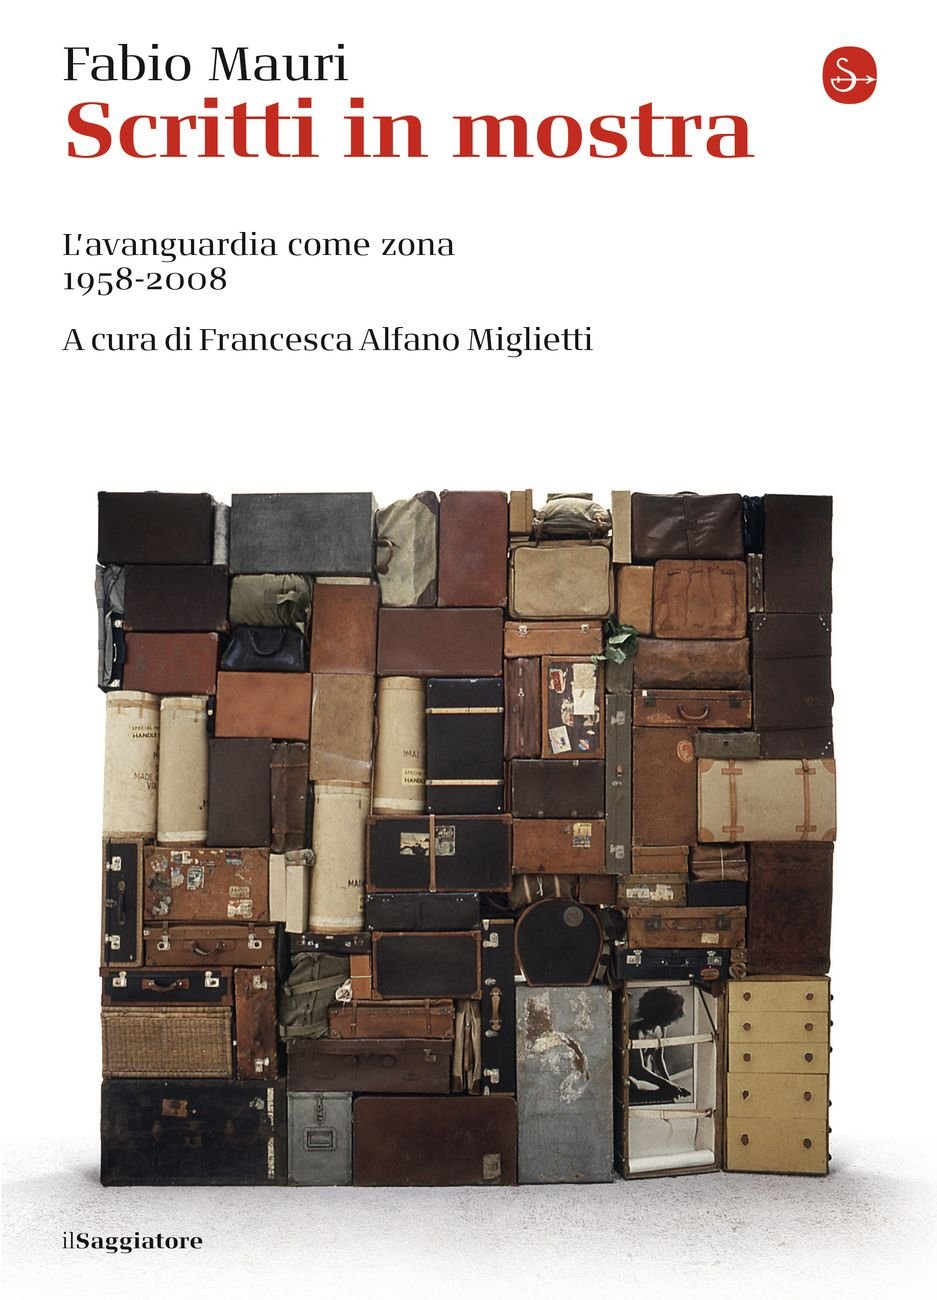 Fabio Mauri – Scritti in mostra (il Saggiatore, Milano 2019 II ed.)